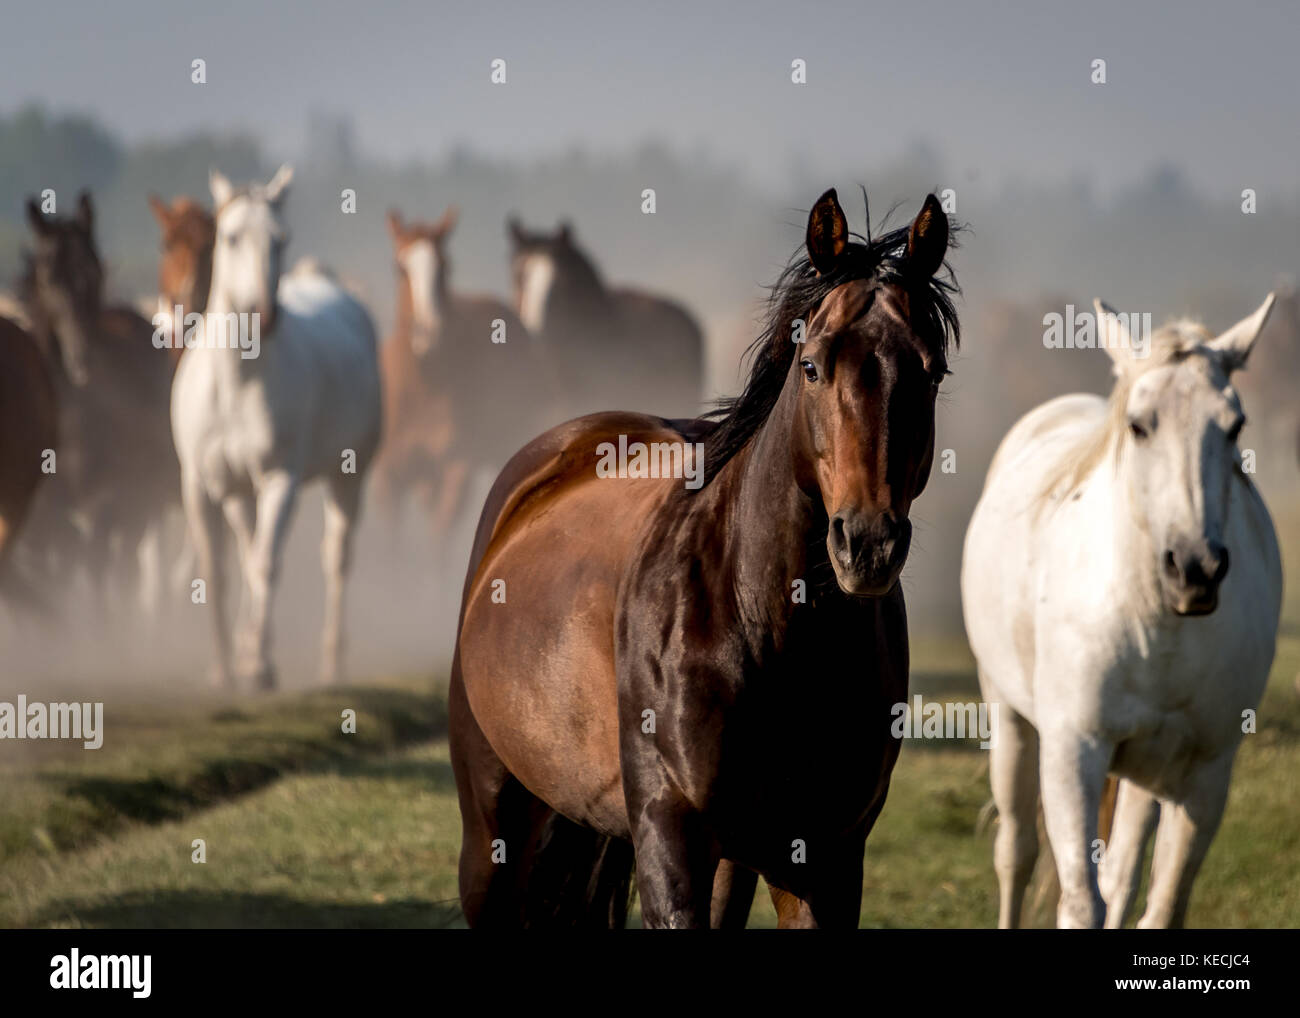 Lo sguardo intenso del cavallo guardando la fotocamera con la mandria di cavalli in piedi dietro di esso, tutti i cavalli americani nel western USA Foto Stock